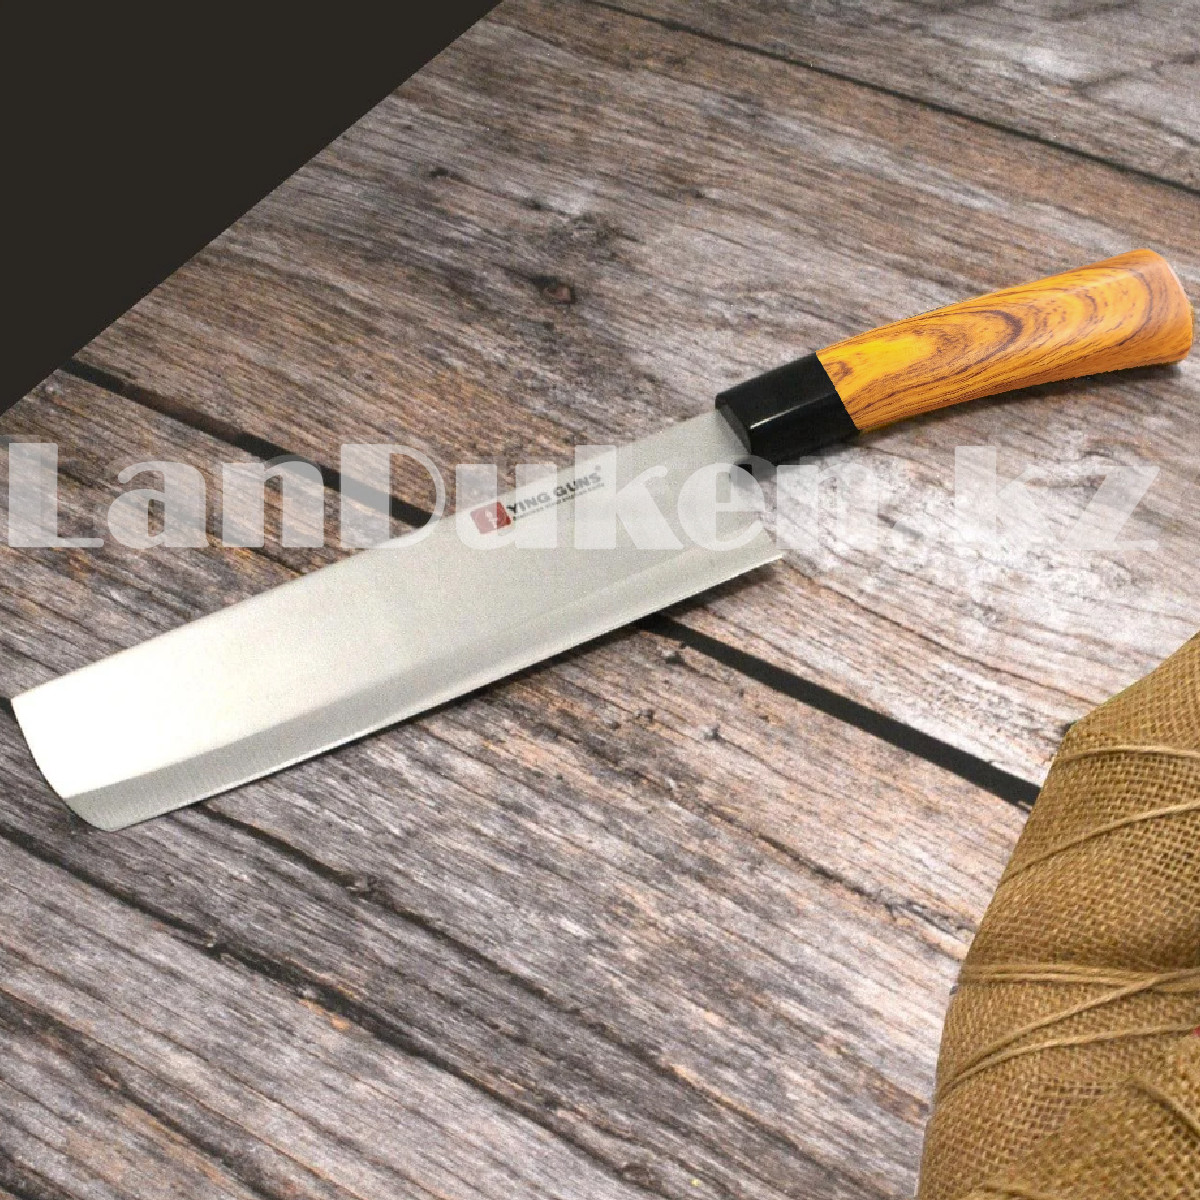 Нож накири из нержавеющей стали с пластиковой рукояткой под дерево Ying guns 31 см